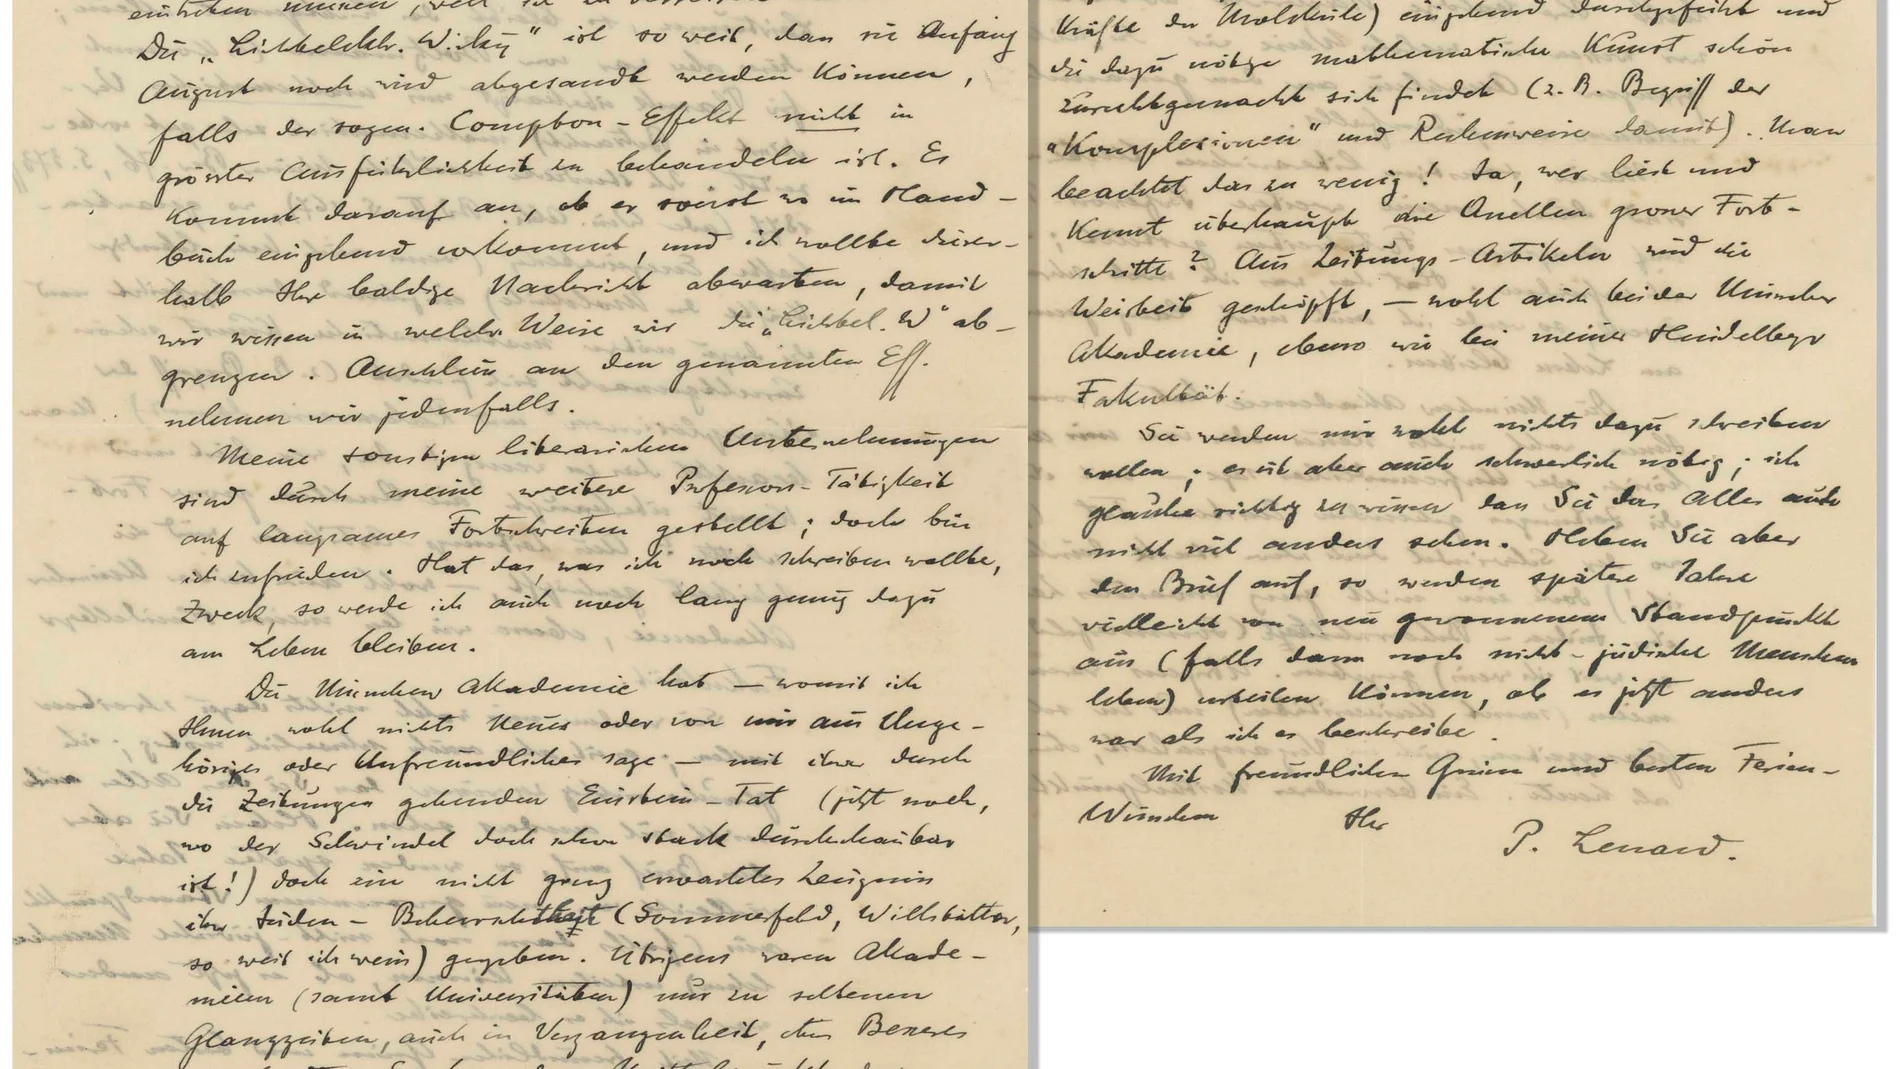 Carta escrita y firmada por el Nobel Philipp Lenard